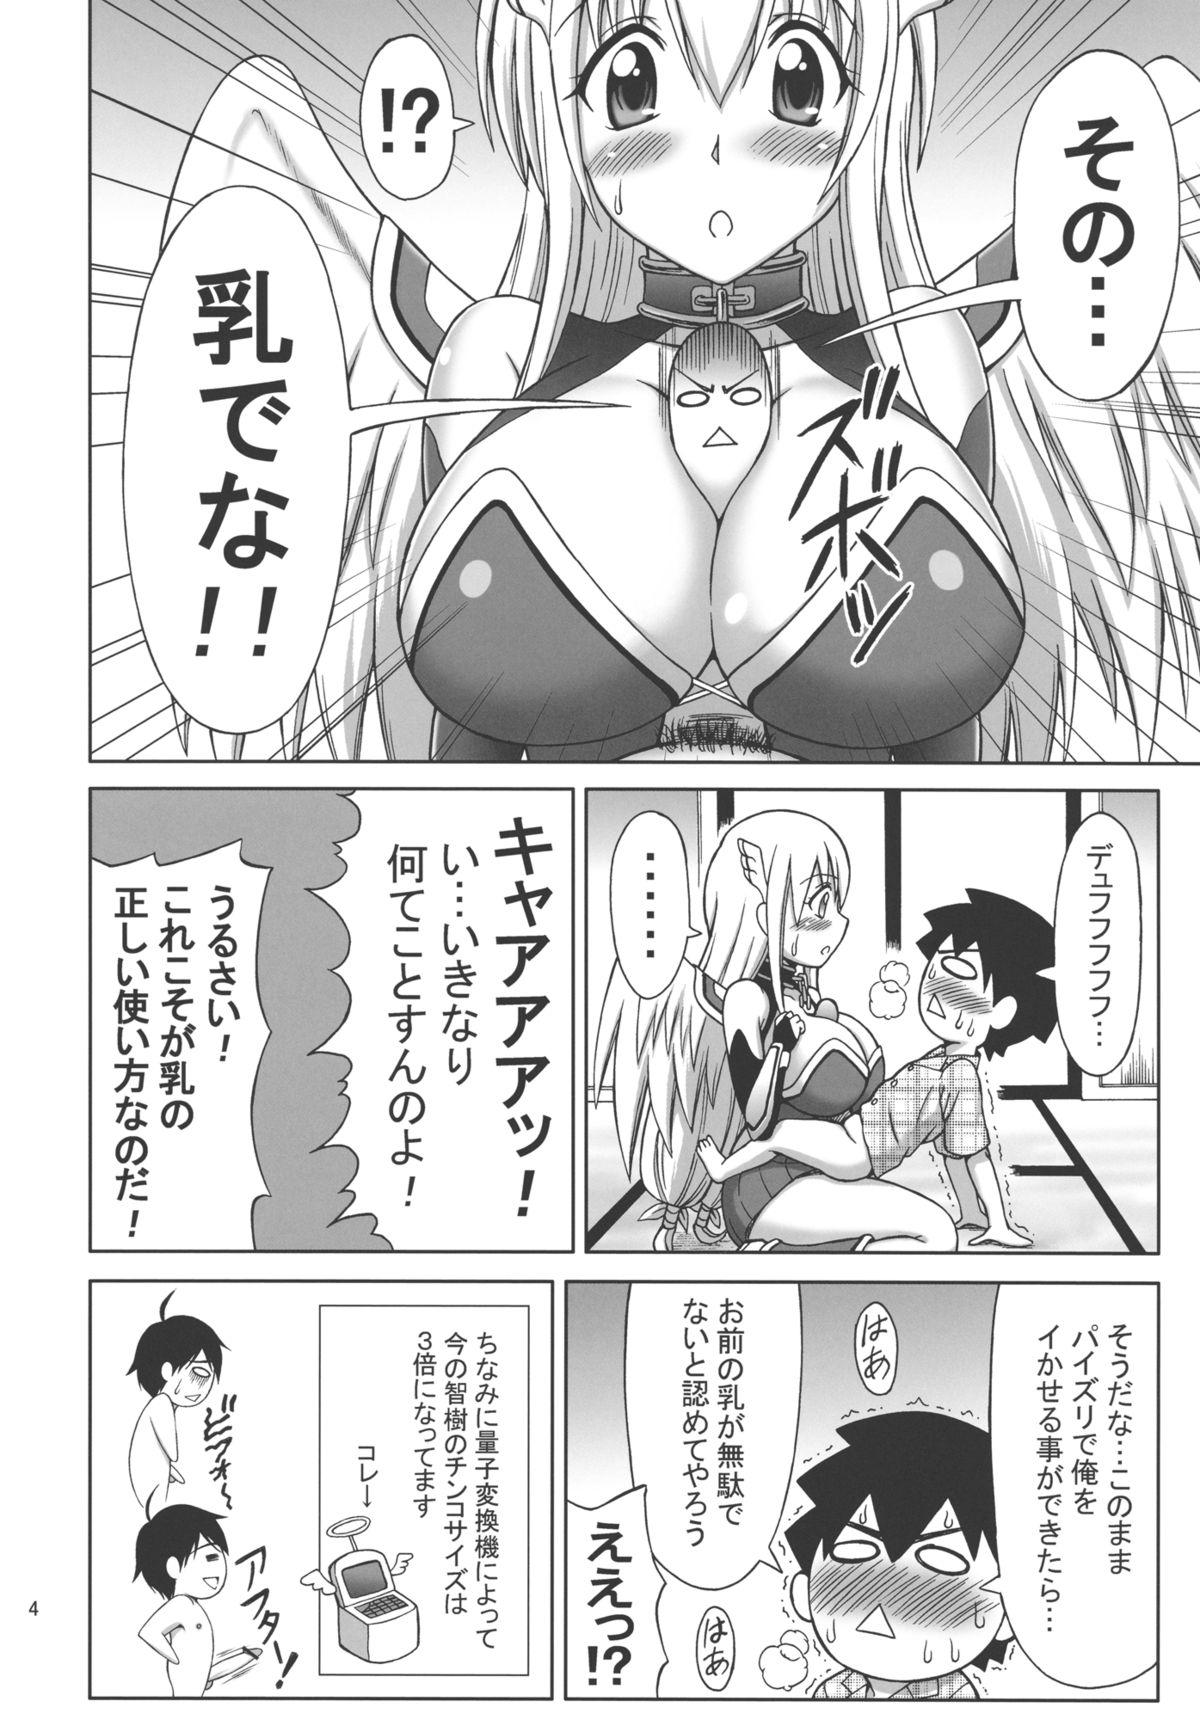 Squirters Mikakunin Seibutsu OO - Sora no otoshimono Gag - Page 4